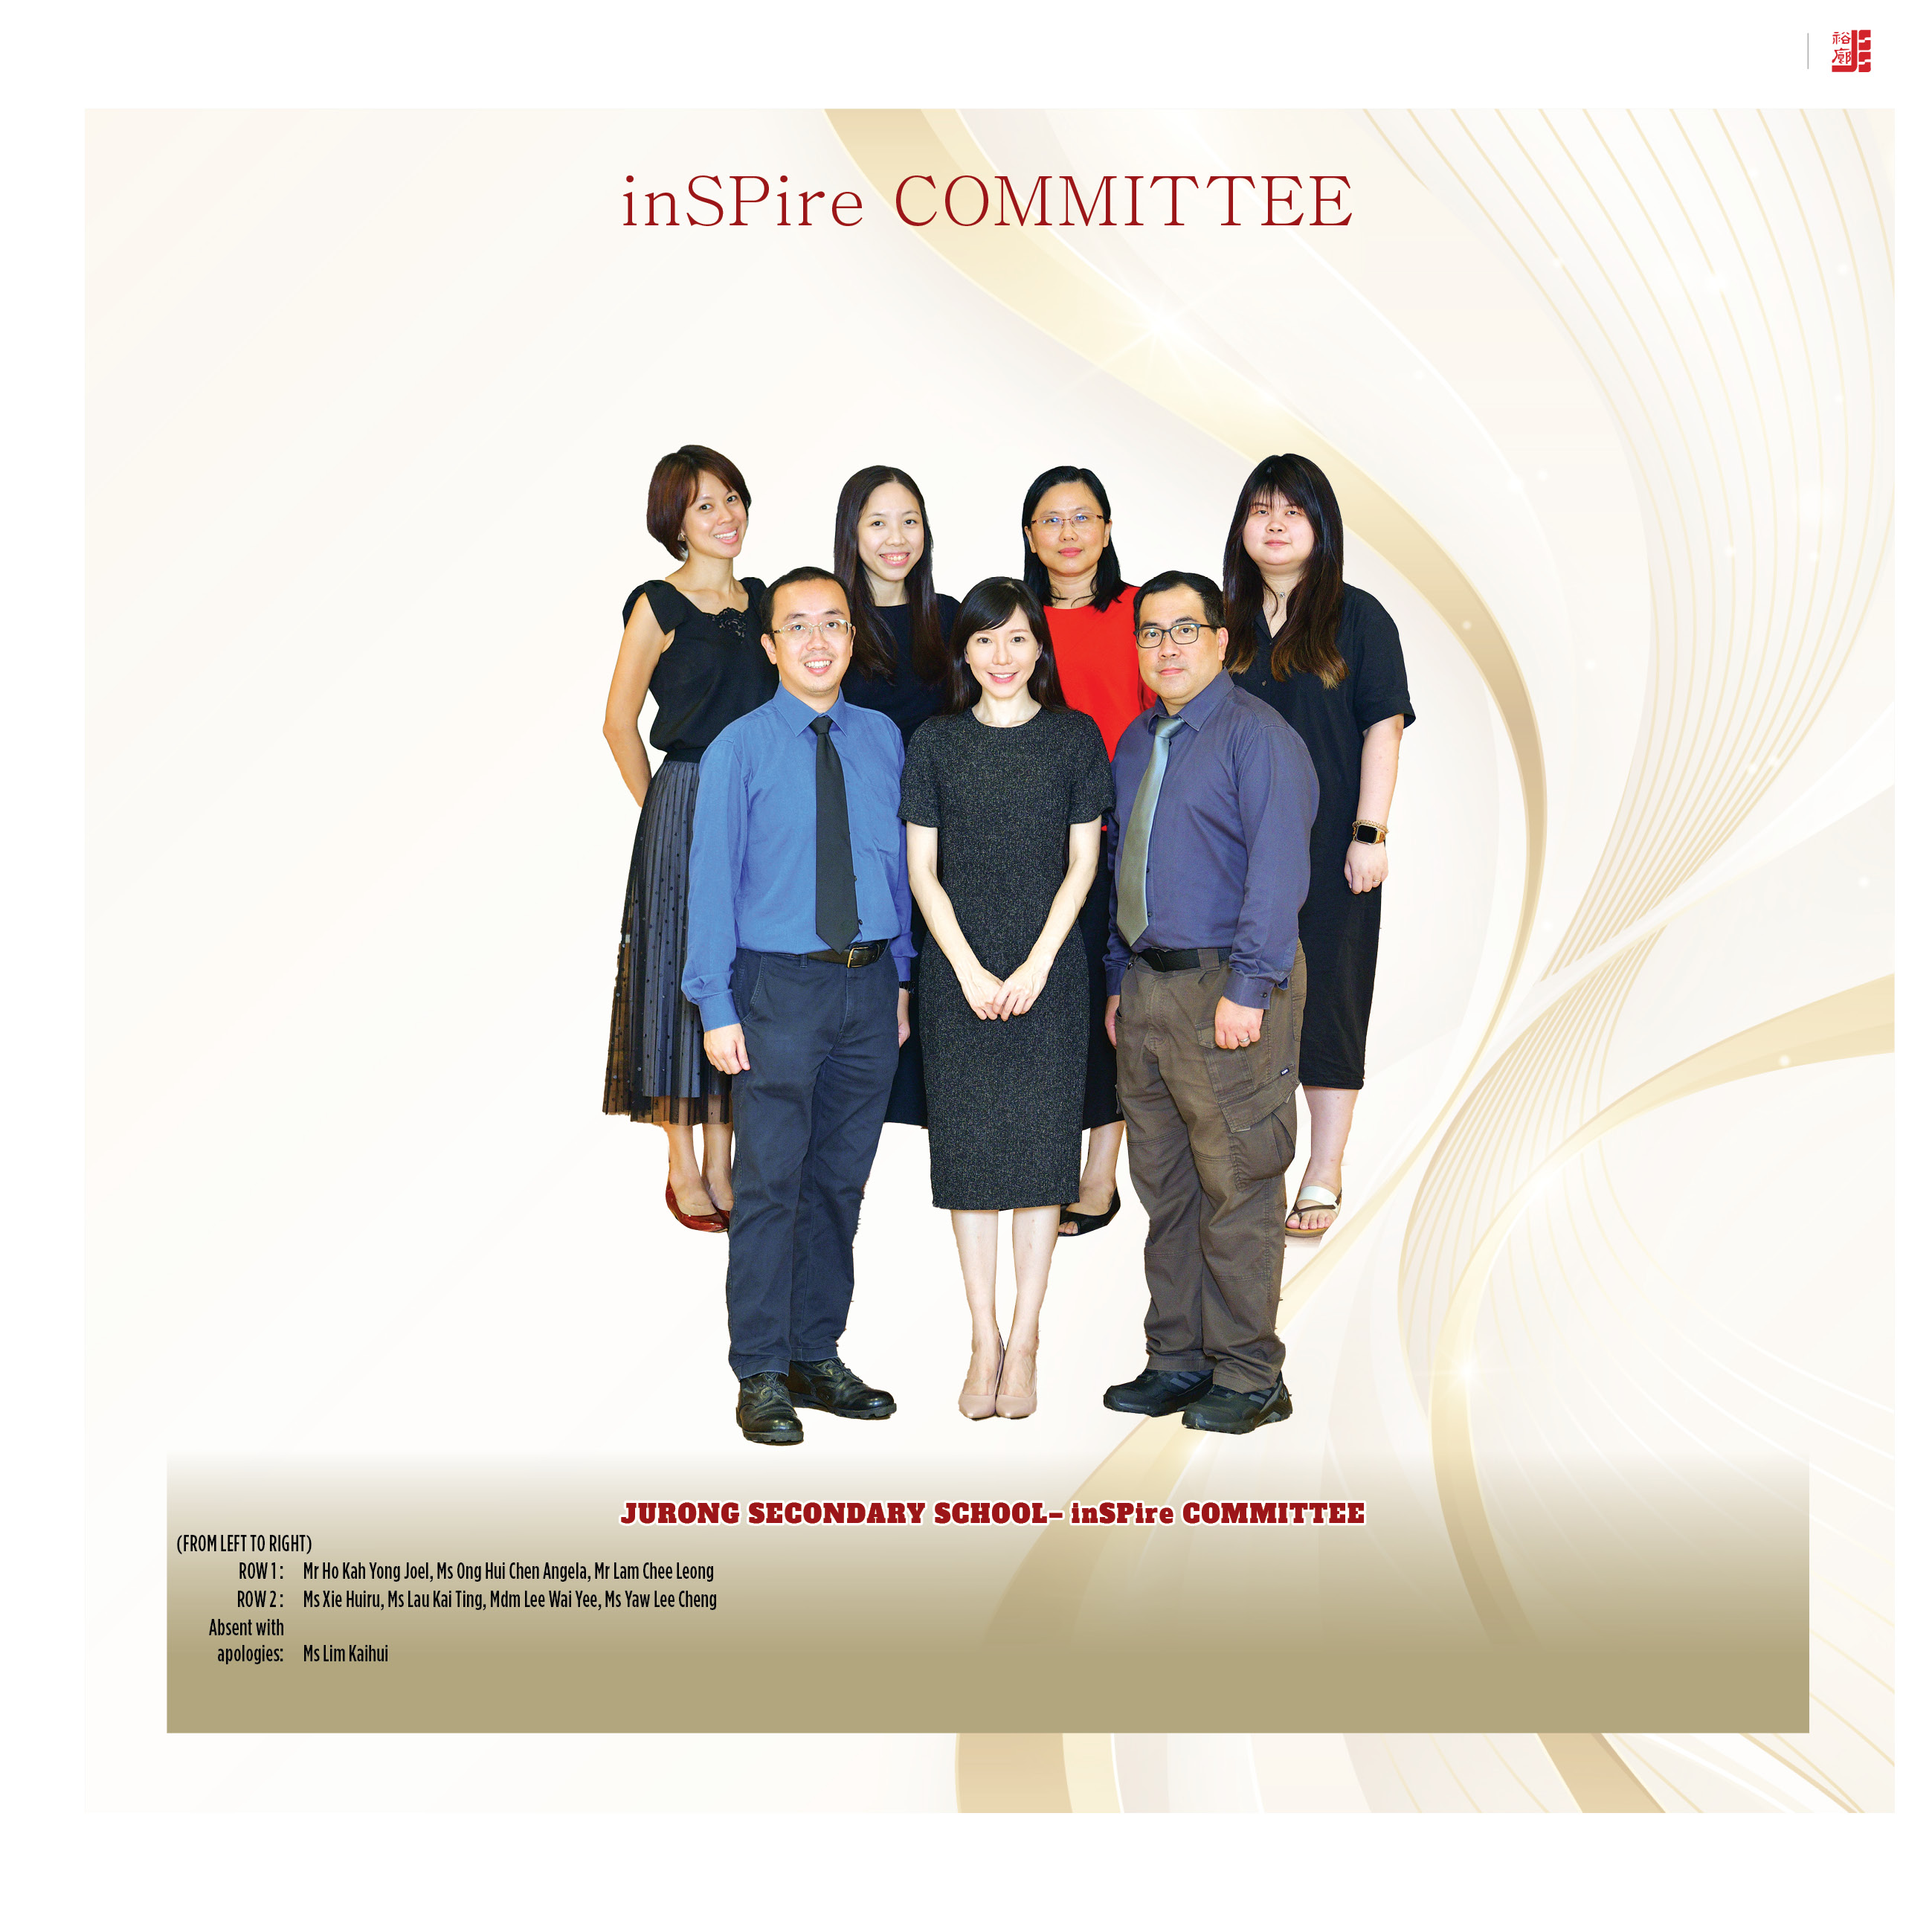 inSPire Committee